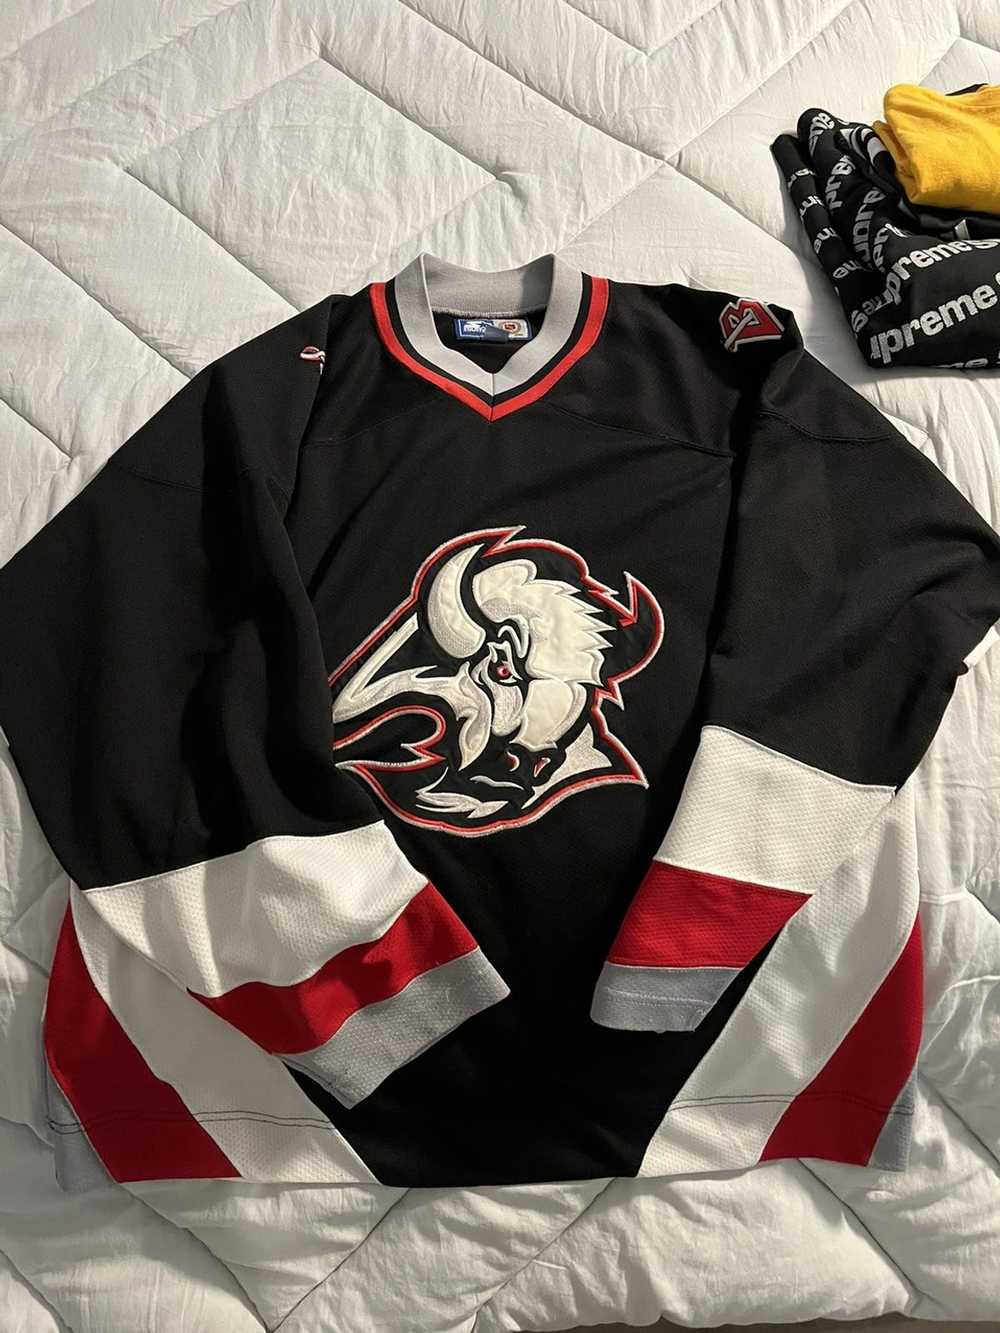 Vintage 90s Buffalo Sabres Jersey Mens Large Black NHL Hockey Goat